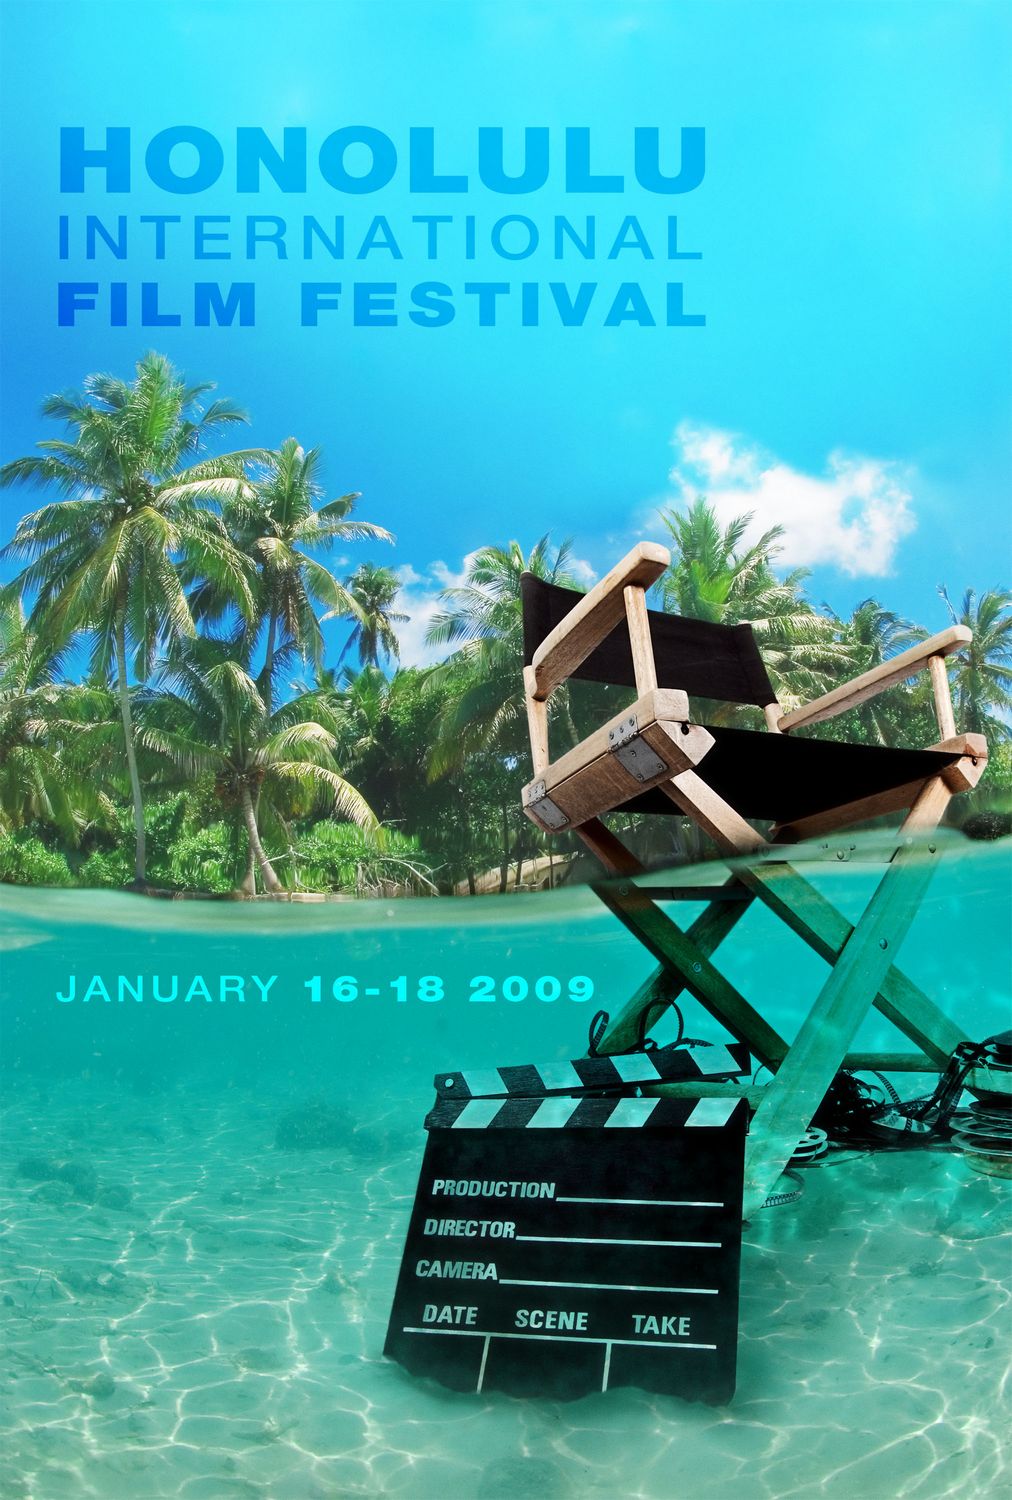 Honolulu Film Festival Extra Large Movie Poster Image IMP Awards